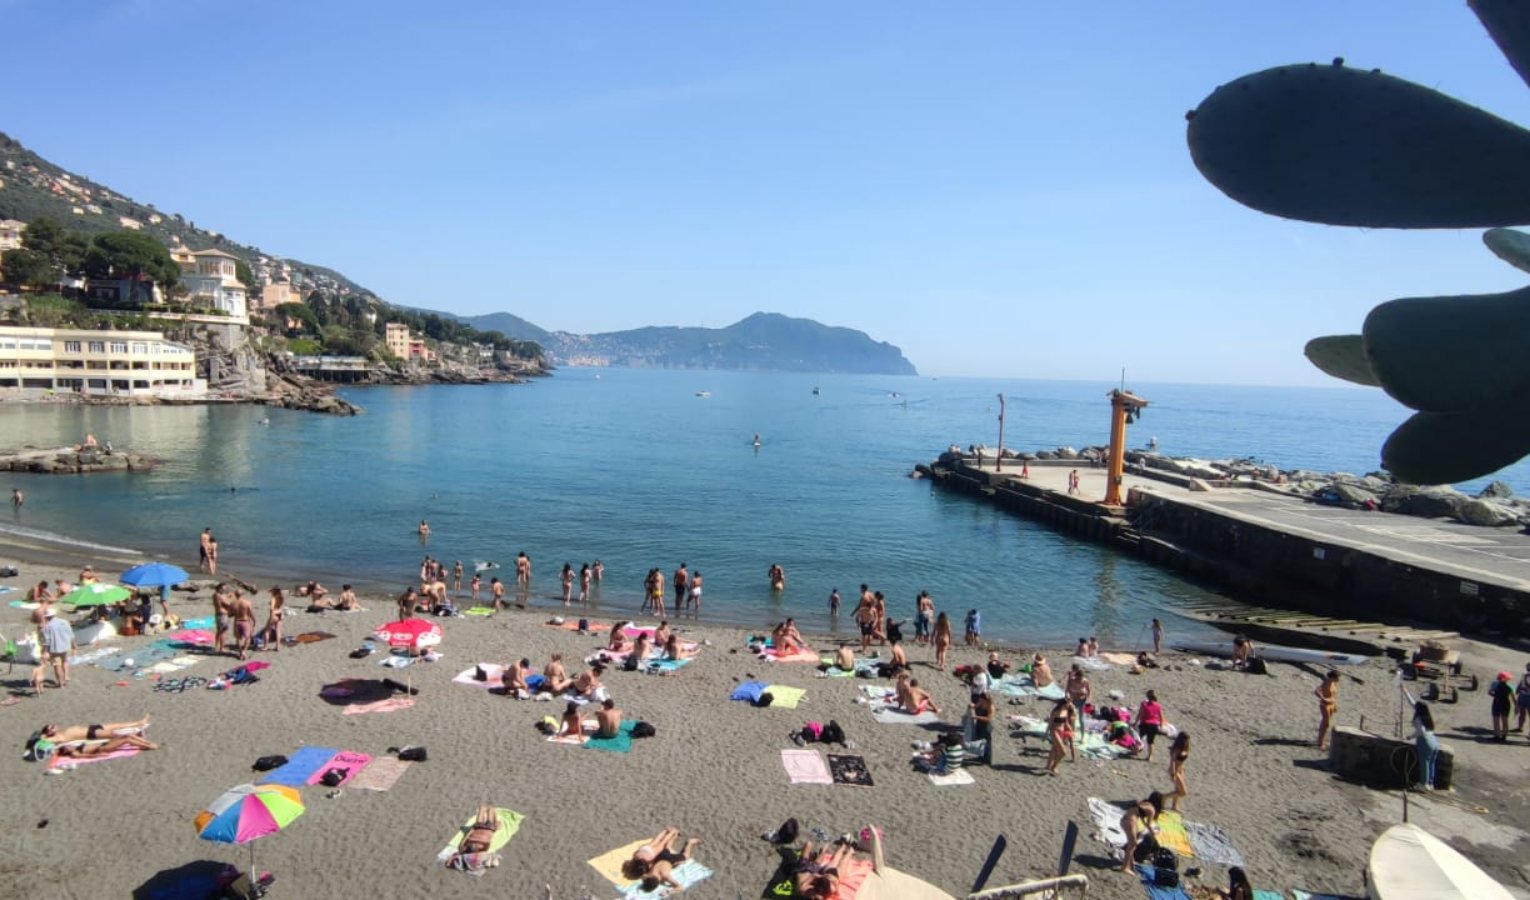 Caldo fuori stagione, in Liguria primi tuffi e spiagge prese d'assalto